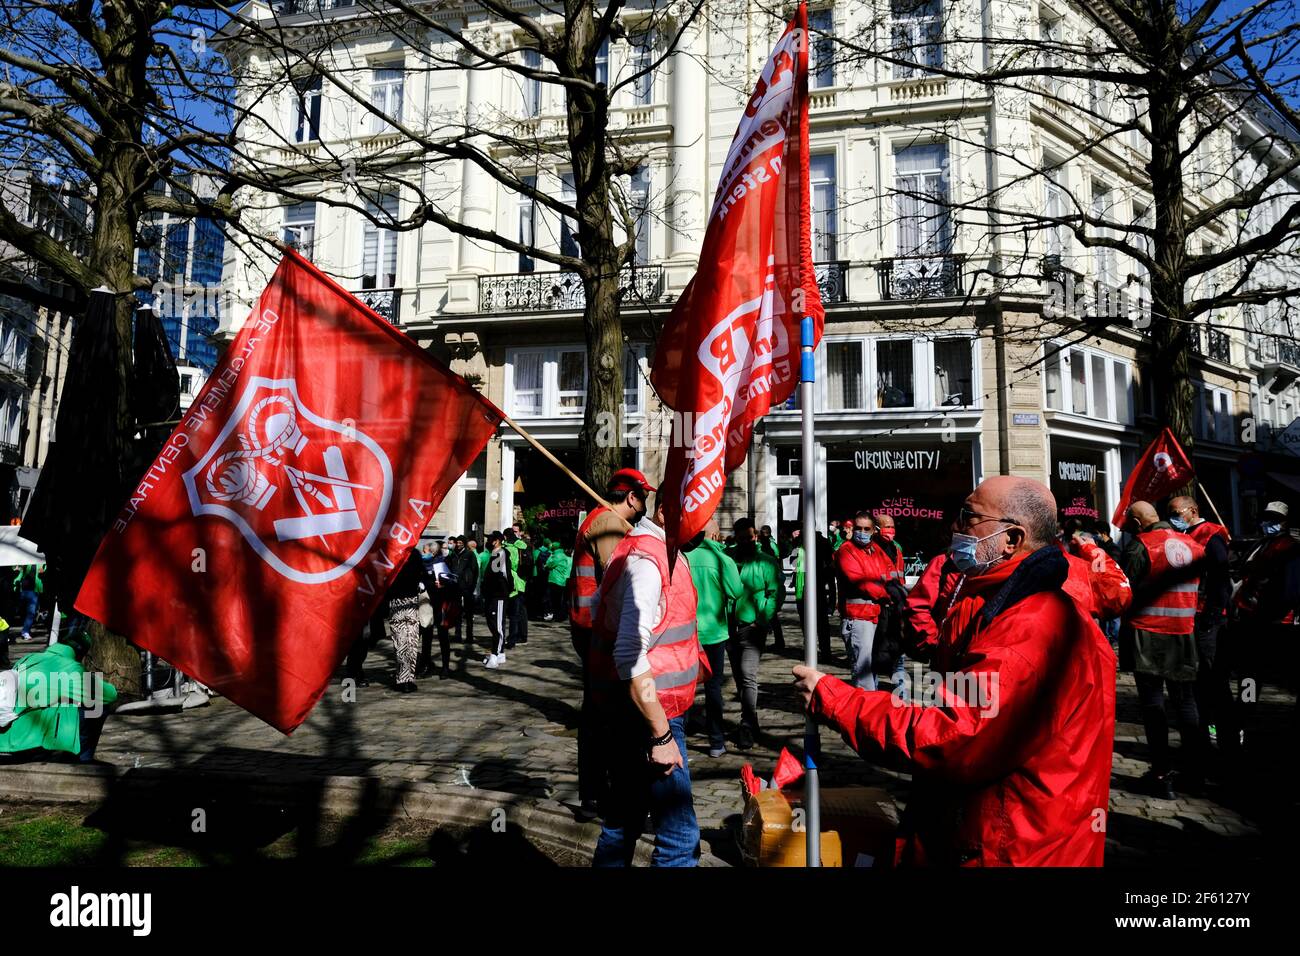 Bruxelles, Belgique. 29 mars 2021. Des représentants des syndicats participent à la manifestation dans le cadre de la grève nationale d'un jour des travailleurs du secteur privé. Crédit: ALEXANDROS MICHAILIDIS/Alamy Live News Banque D'Images